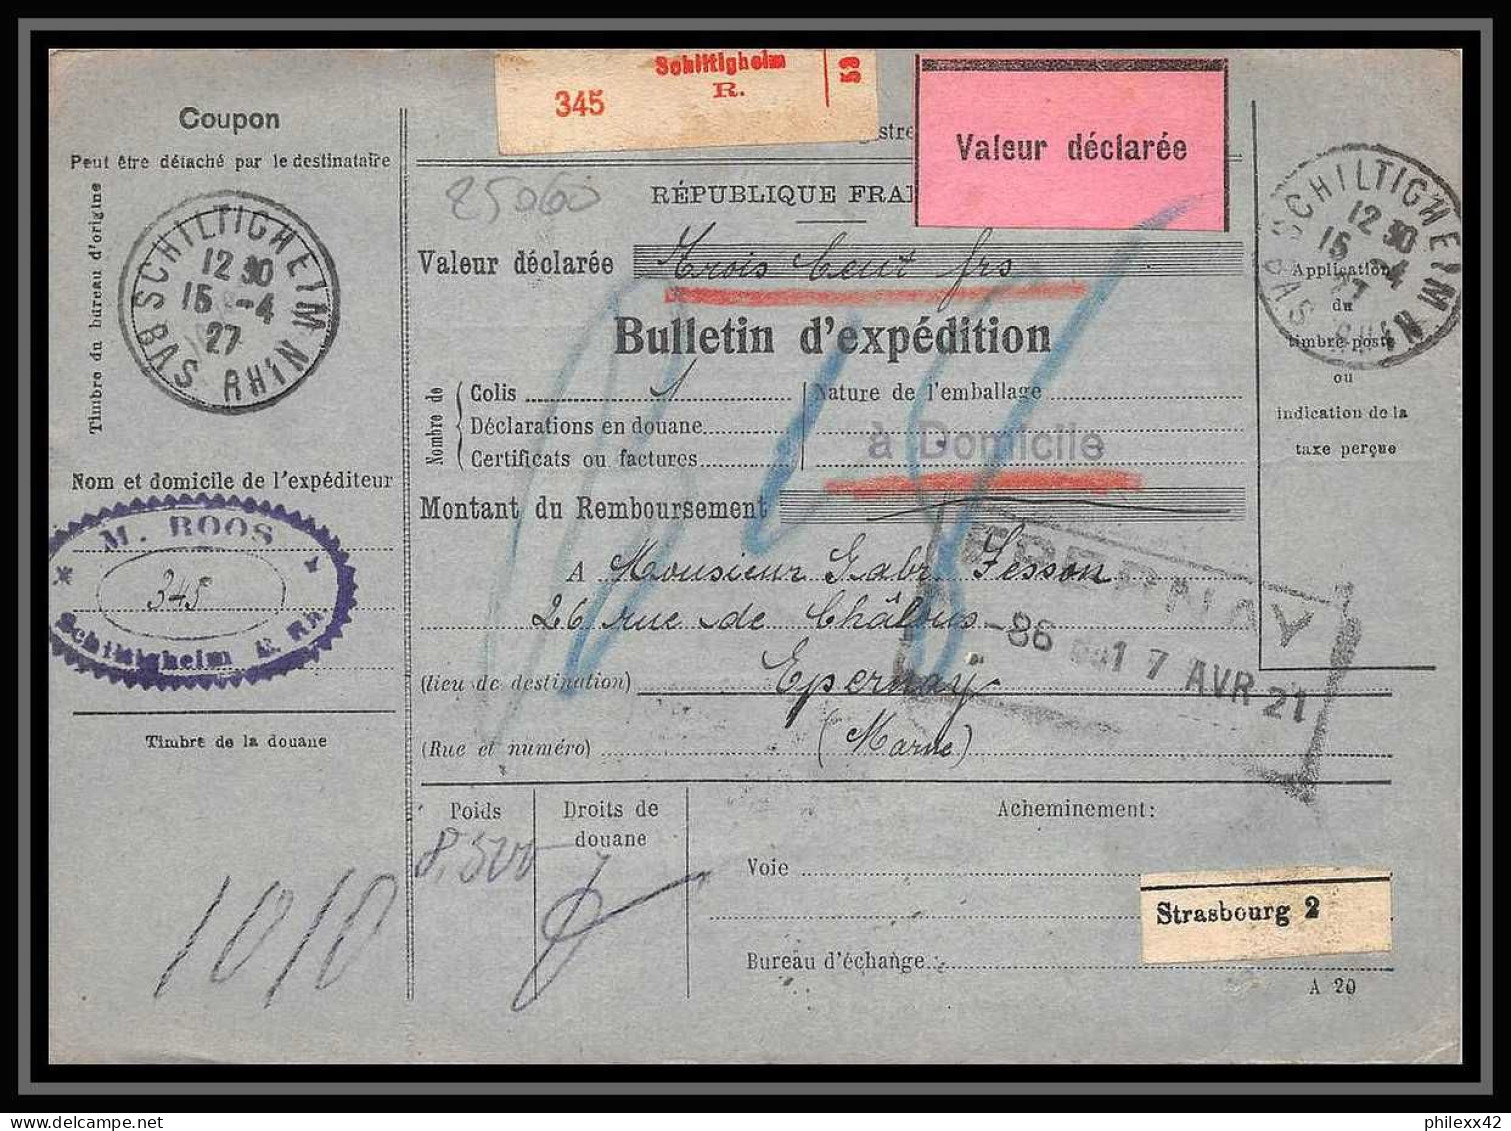 25060 Bulletin D'expédition France Colis Postaux Fiscal Haut Rhin 1927 Schiltigheim Merson 123+145 Valeur Déclarée - Briefe U. Dokumente